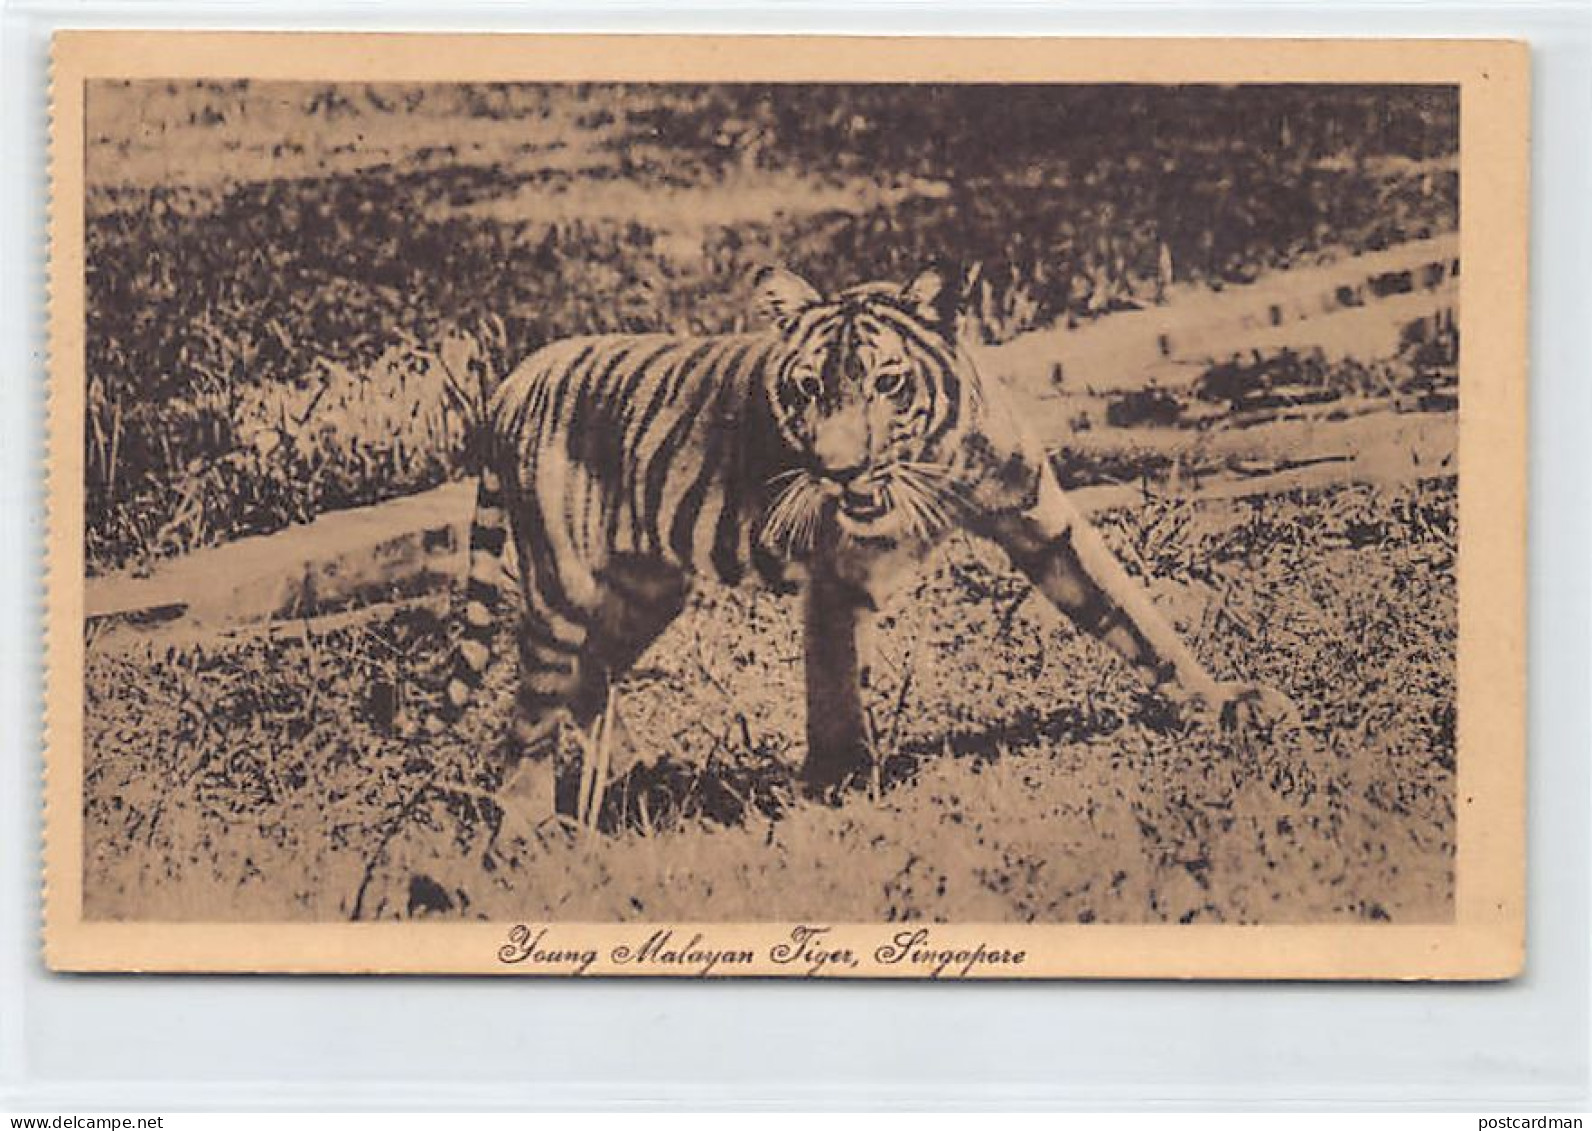 Singapore - Young Malayan Tiger - Publ. M. Prager  - Singapore